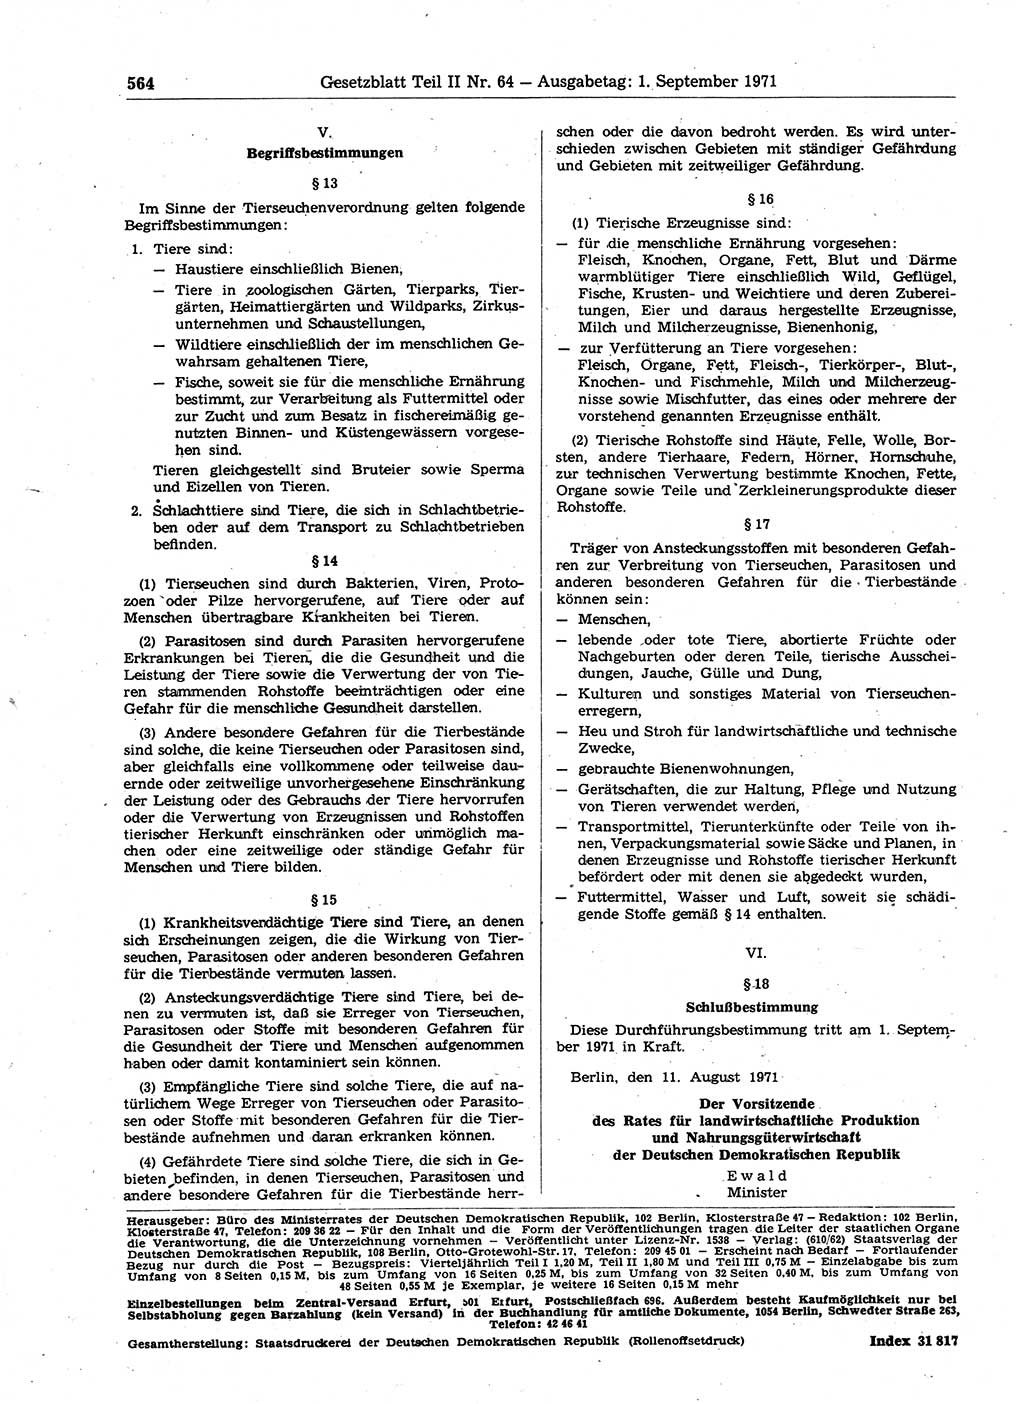 Gesetzblatt (GBl.) der Deutschen Demokratischen Republik (DDR) Teil ⅠⅠ 1971, Seite 564 (GBl. DDR ⅠⅠ 1971, S. 564)